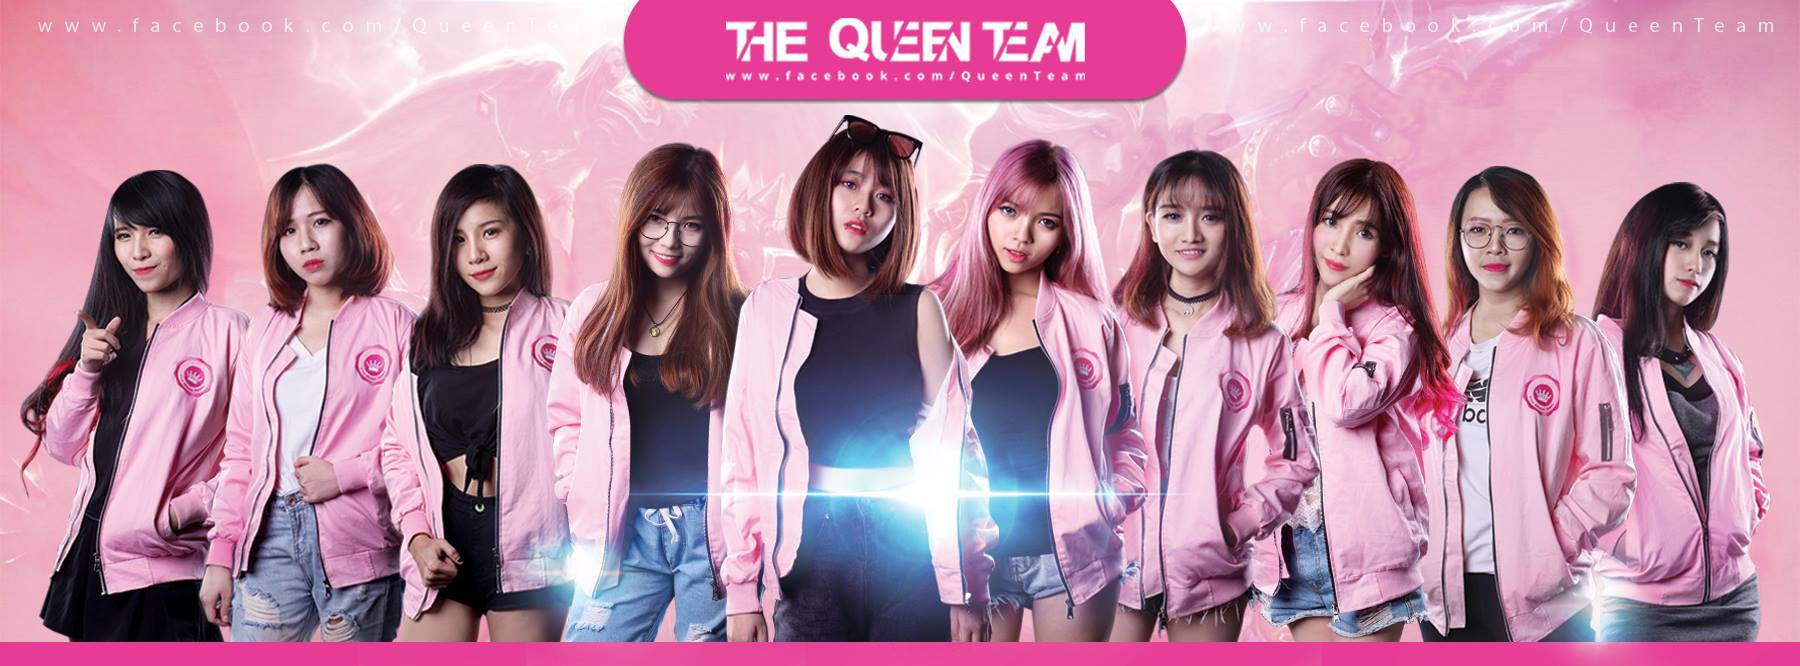 Trước khi xảy ra drama tiền tài, The Queen Team là cái nôi sản sinh ra loạt nữ streamer đình đám như MisThy, Uyên Pu, Ohsusu - Ảnh 2.